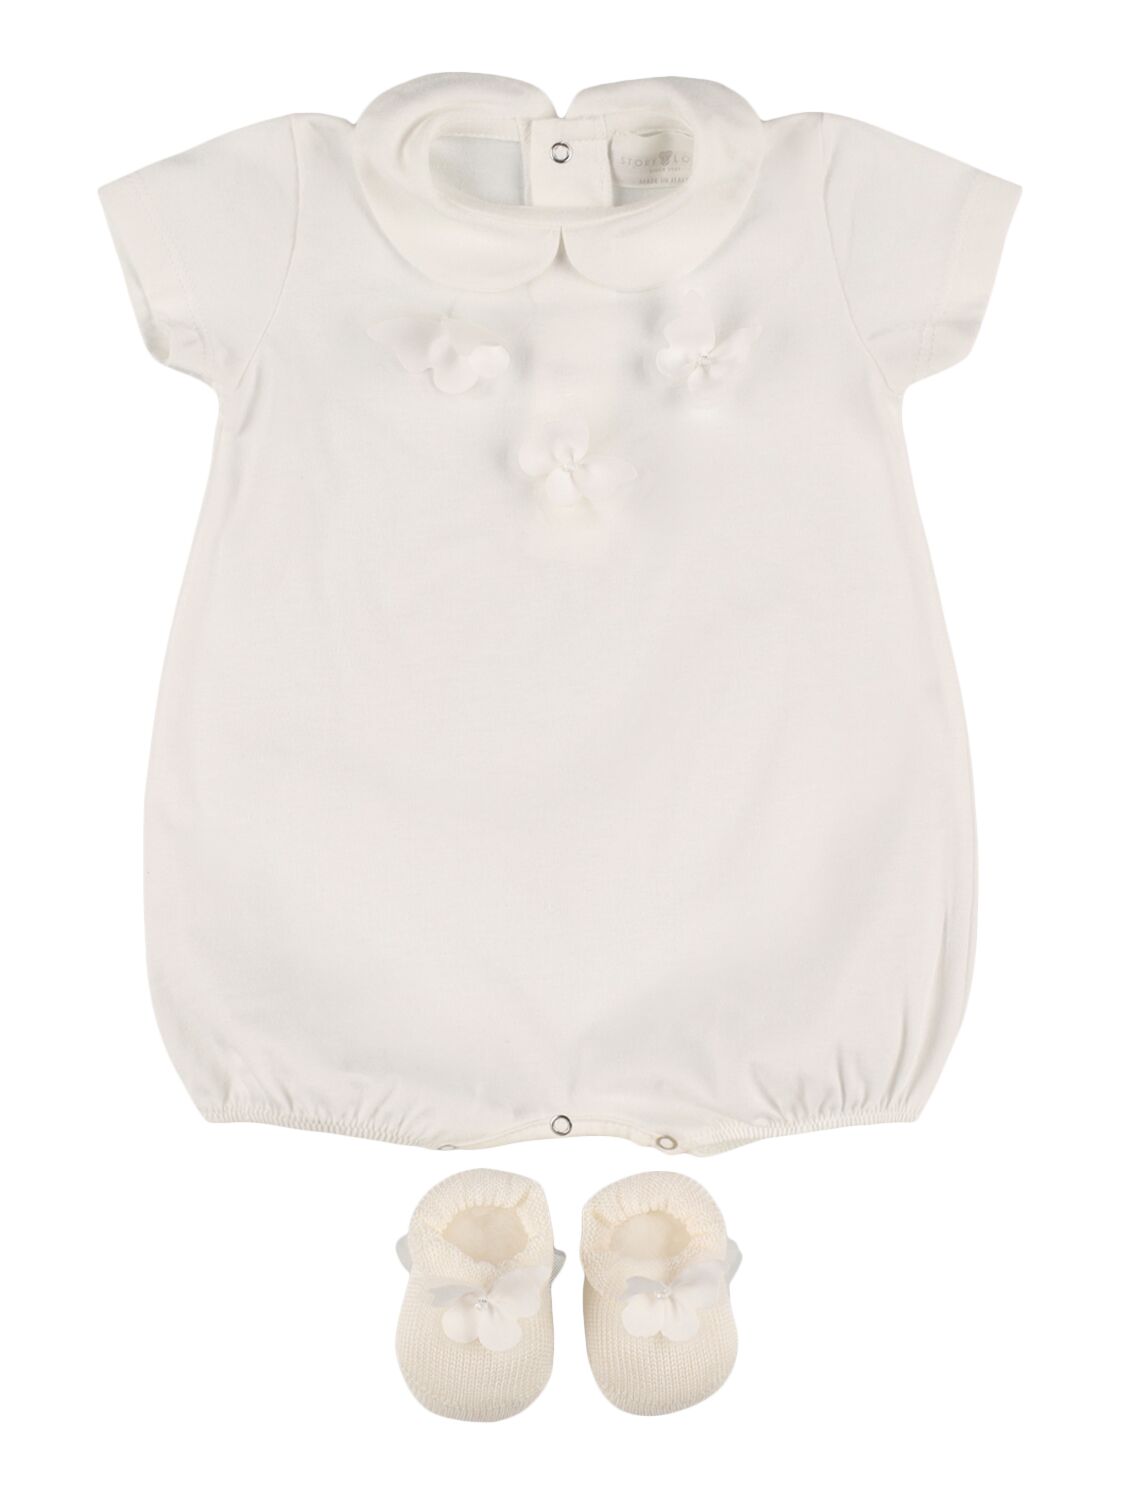 Story Loris Babies' Jersey Bodysuit & Booties W/ Butterfly In White